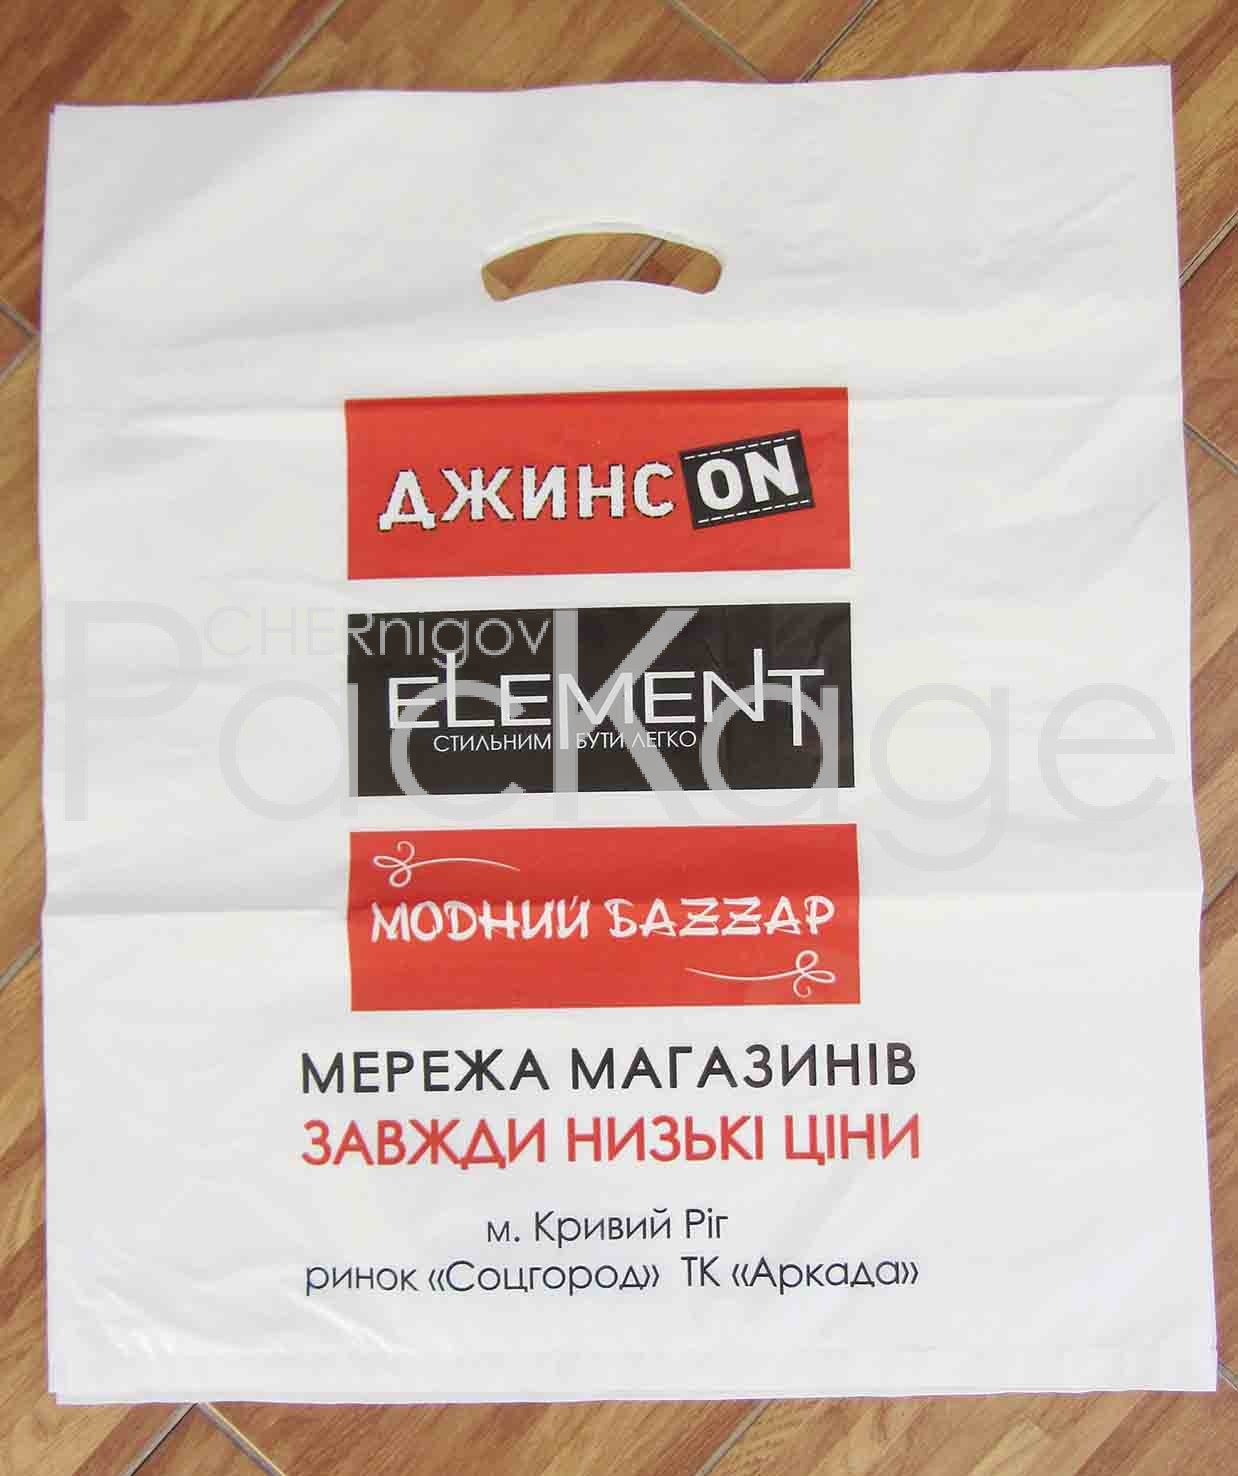 Полиэтиленовый рукав в сравнении с другими упаковочными материалами Chernigov Package - Photo IMG_6357